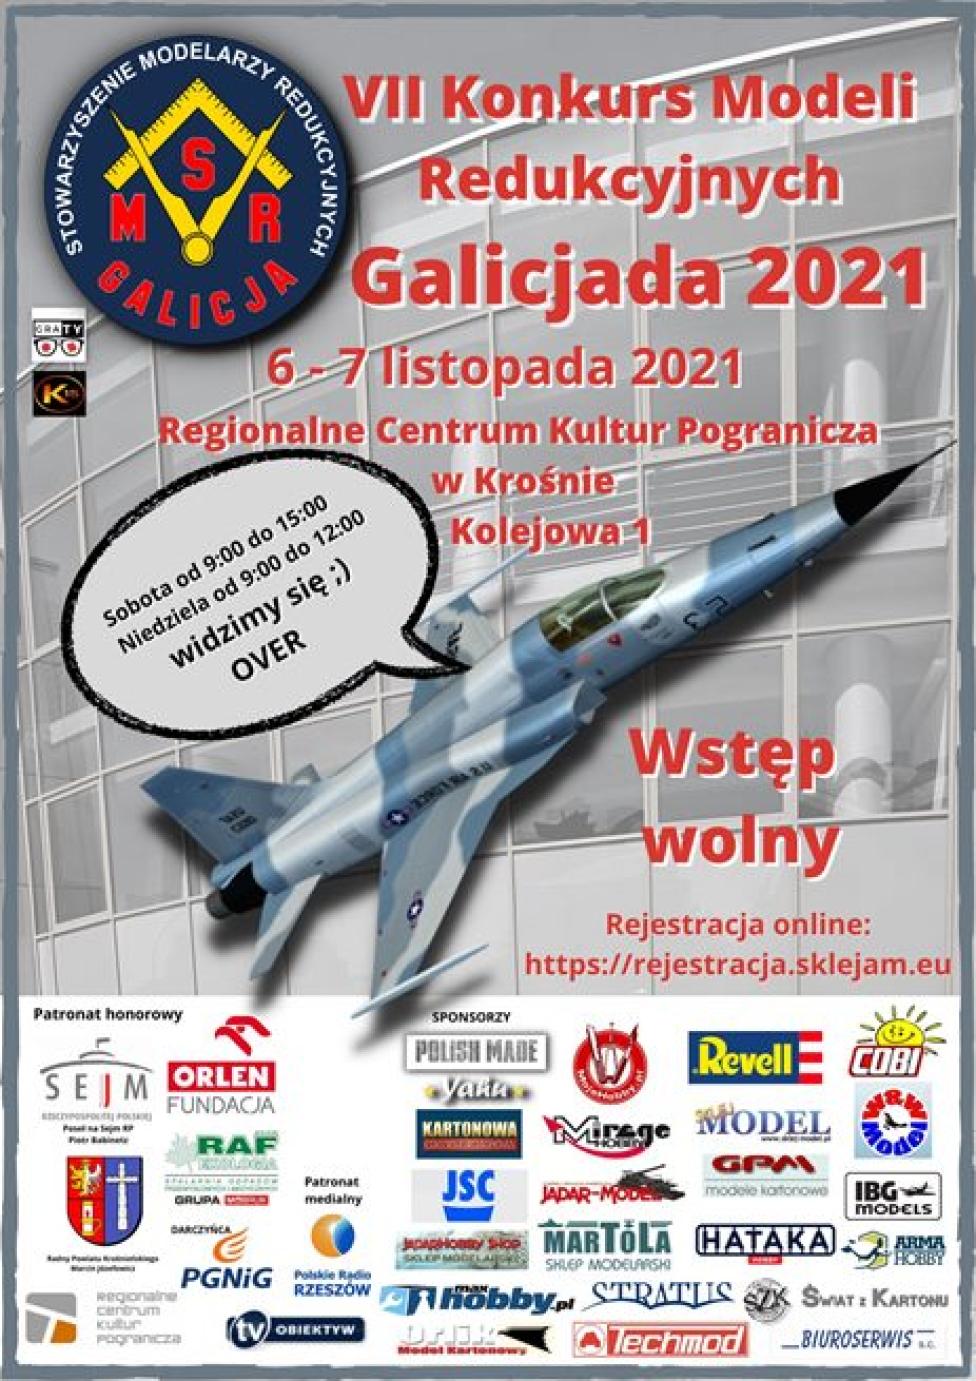 VII Konkurs Modeli Redukcyjnych "Galicjada 2021" (fot. SMR Galicja)